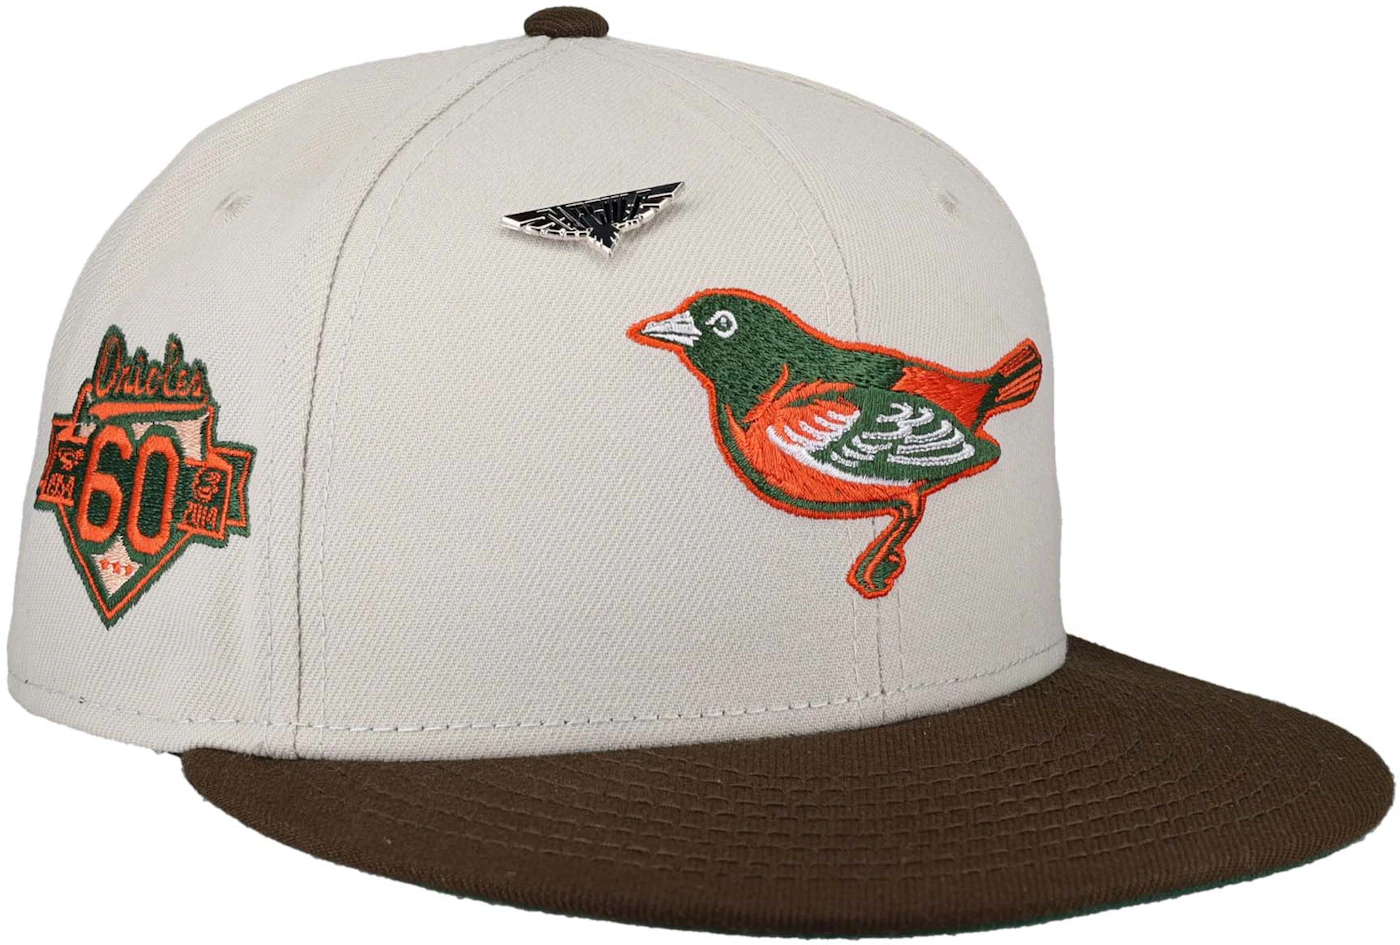 New Era Baltimore Orioles Capsule Bird Collection 60th Season